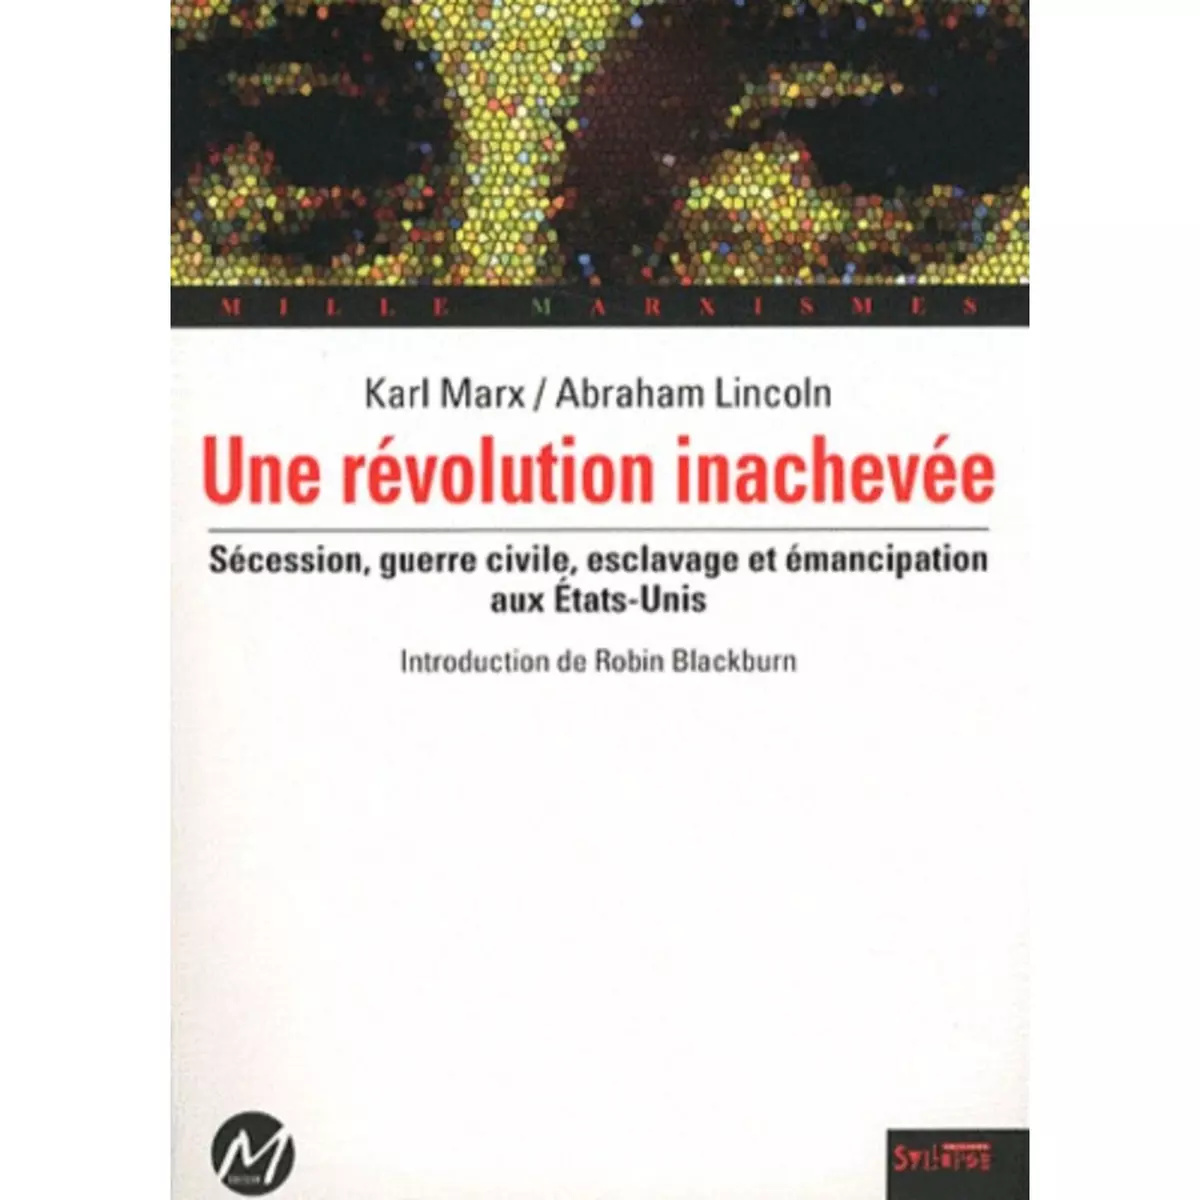  UNE REVOLUTION INACHEVEE. SECESSION, GUERRE CIVILE, ESCLAVAGE ET EMANCIPATION AUX ETATS-UNIS, Marx Karl